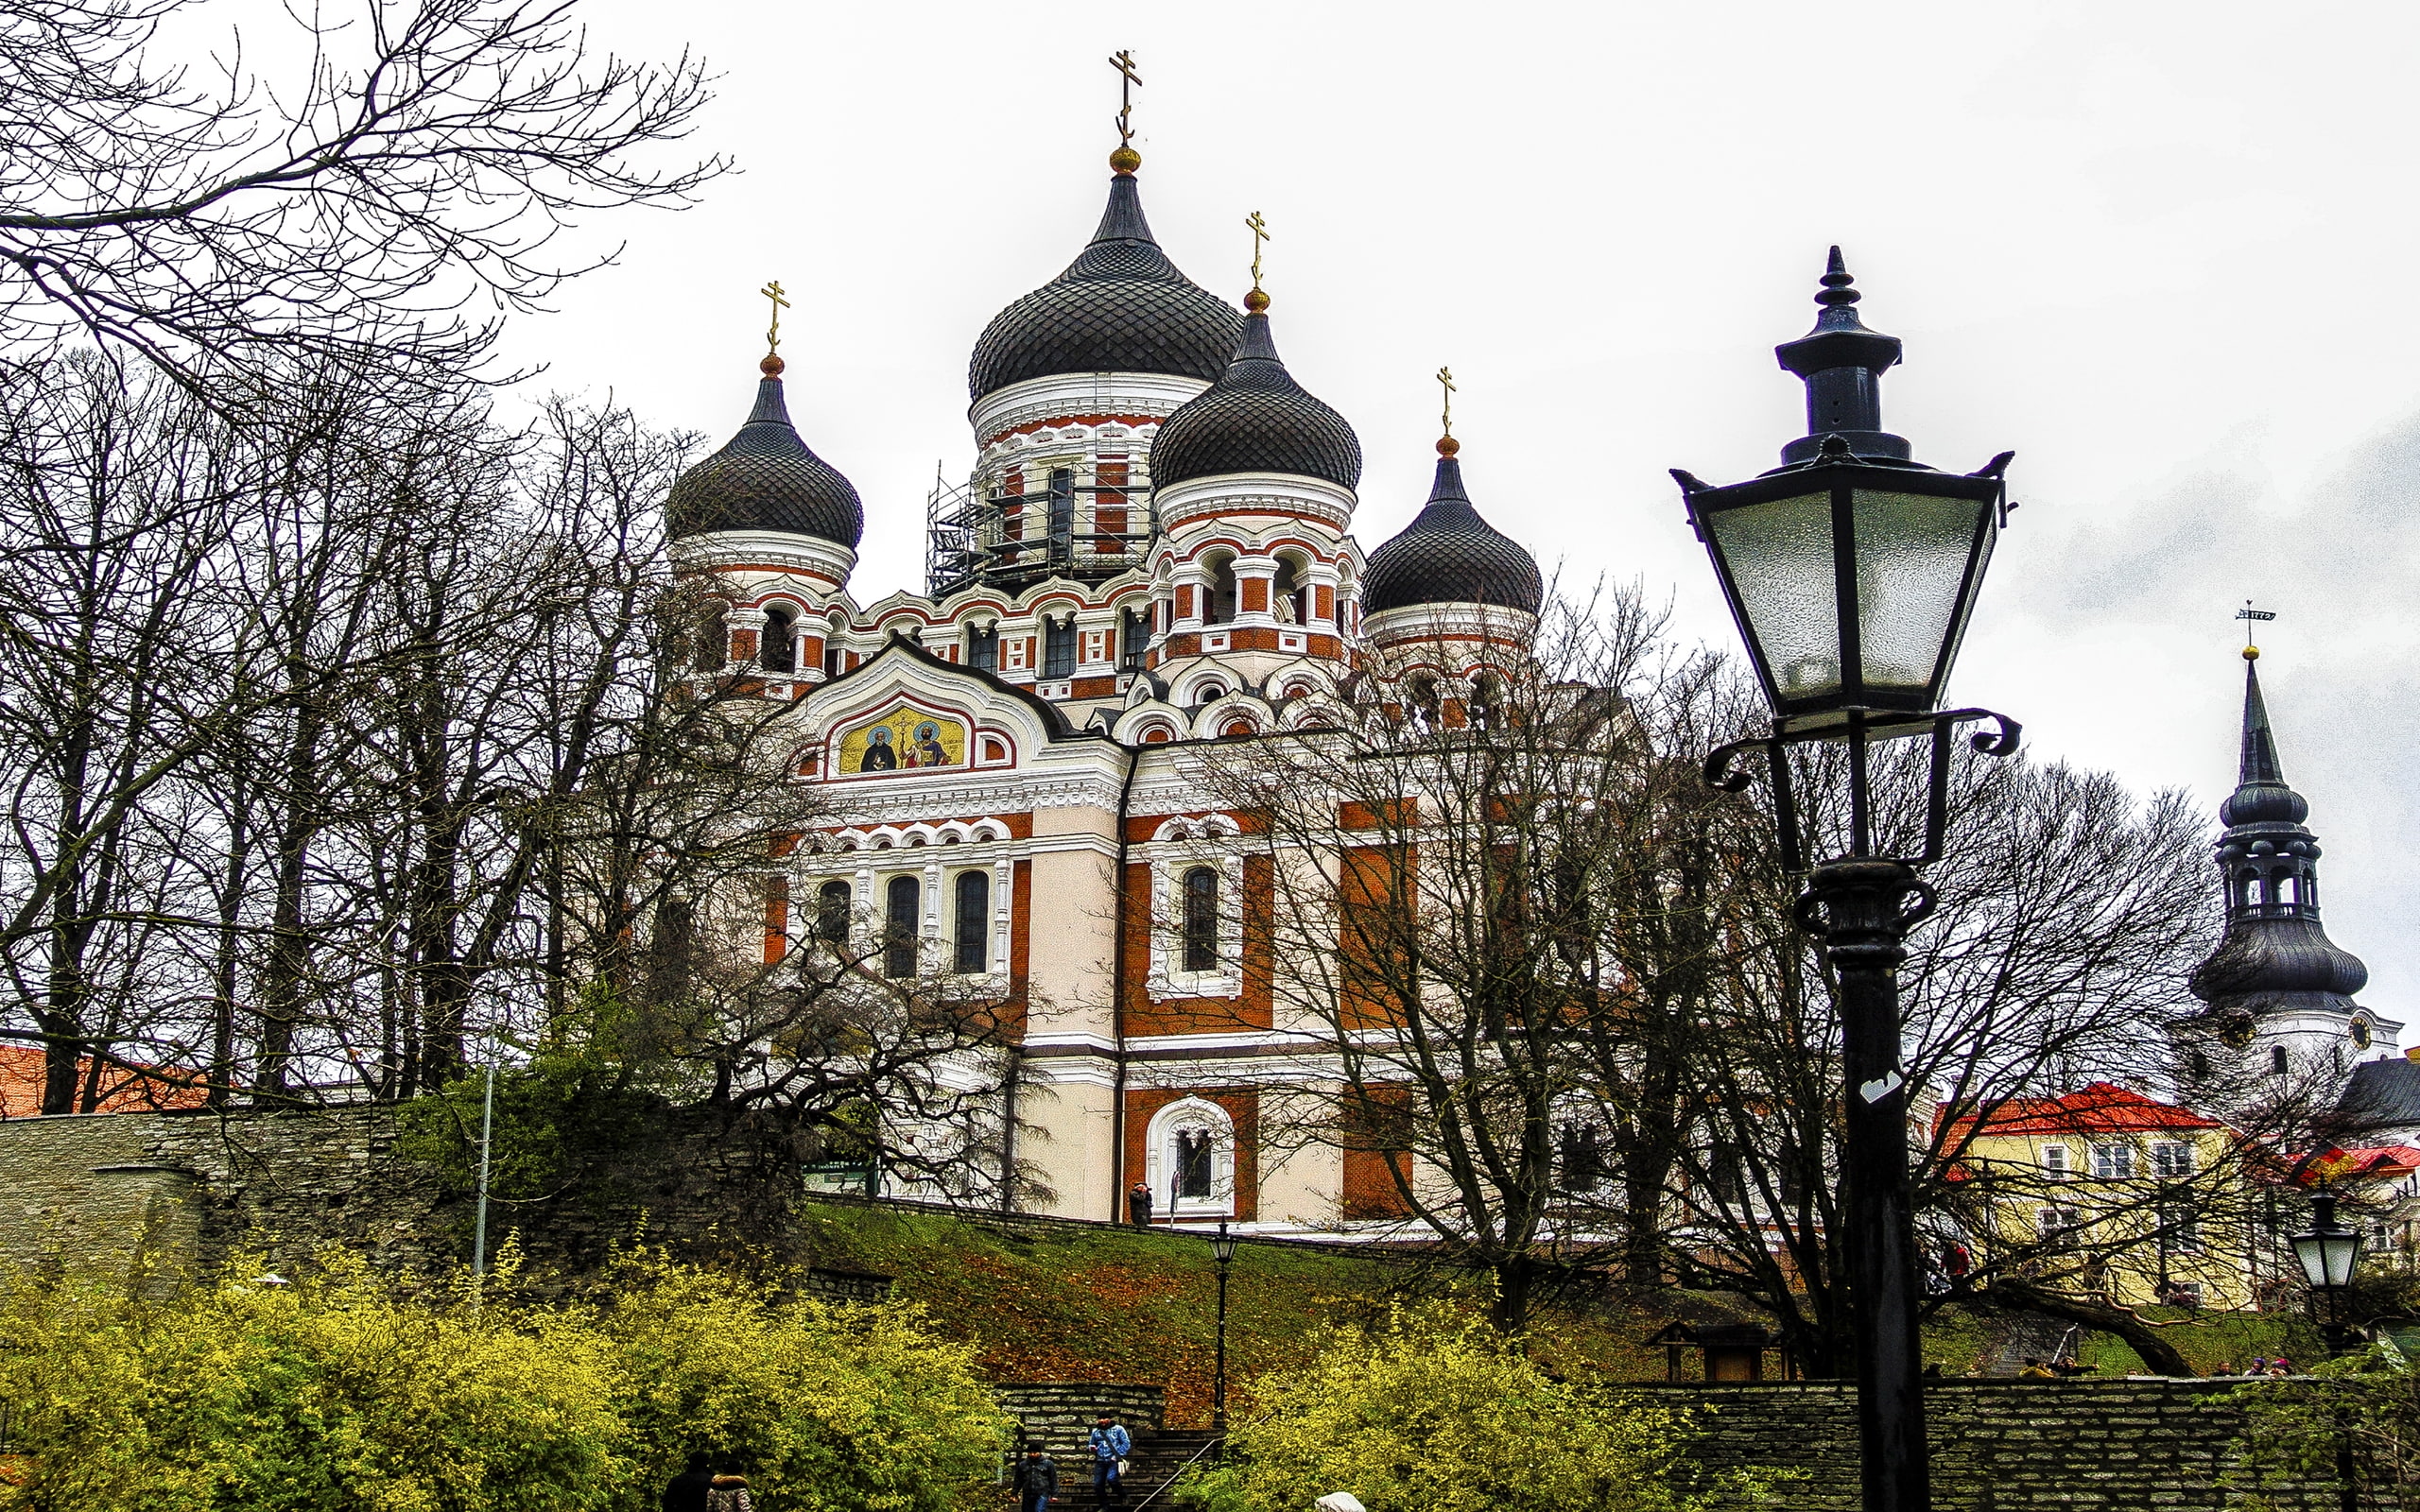 Riga, Tallinn, Helsinki, Tallinn Building The Russian Orthodox Church 2560×1600